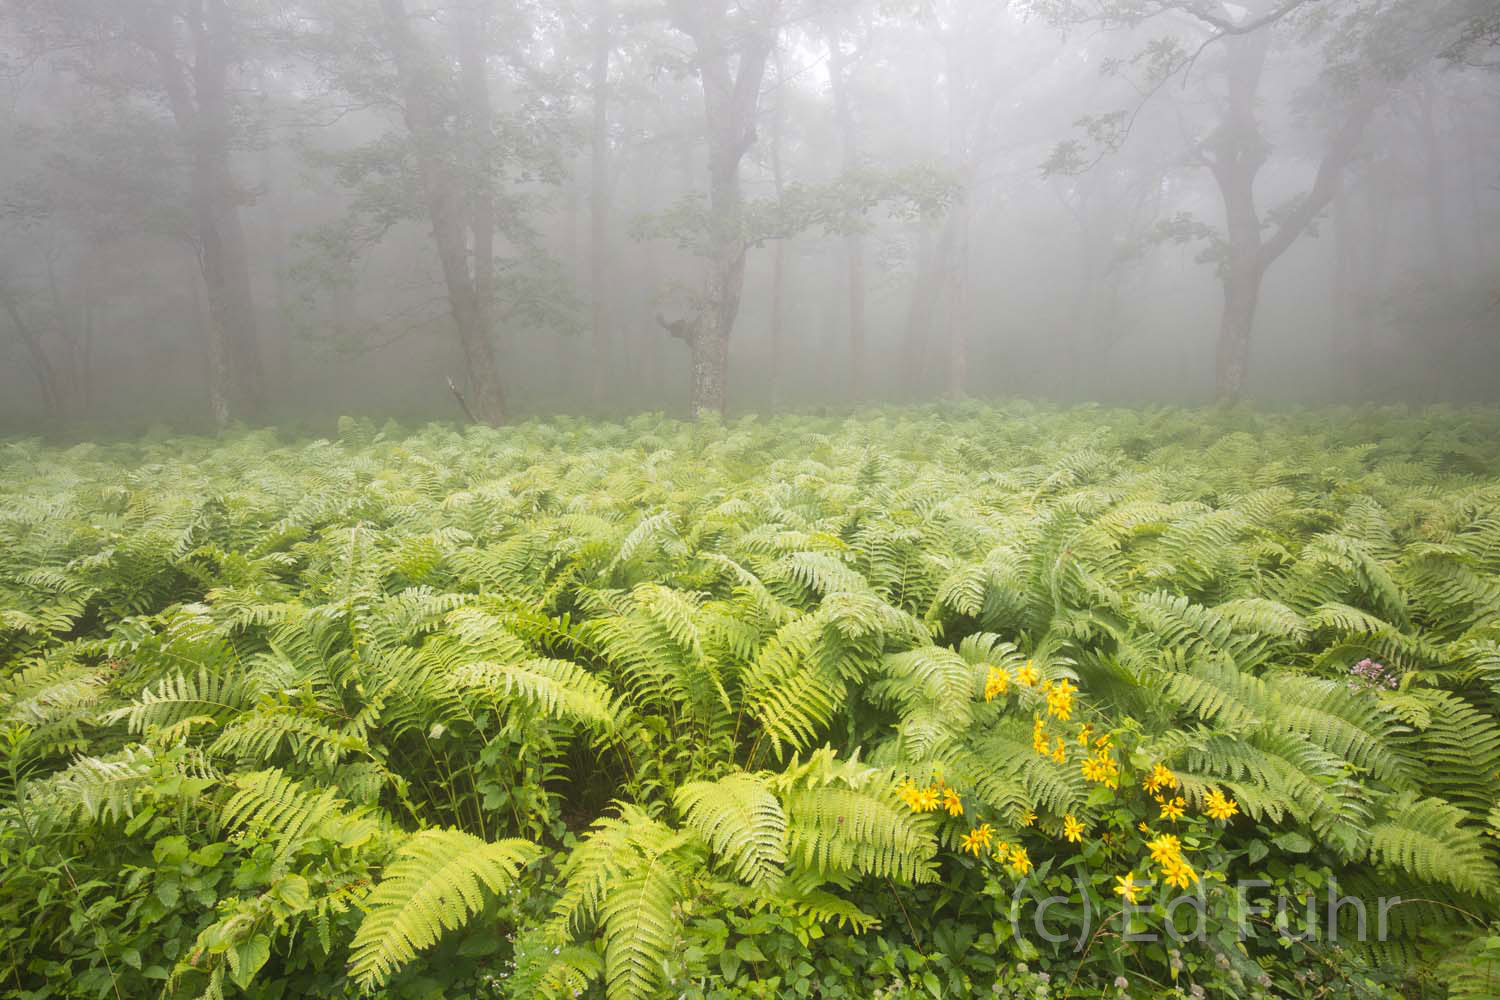 A massive scape of ferns in Shenandoah National Park.